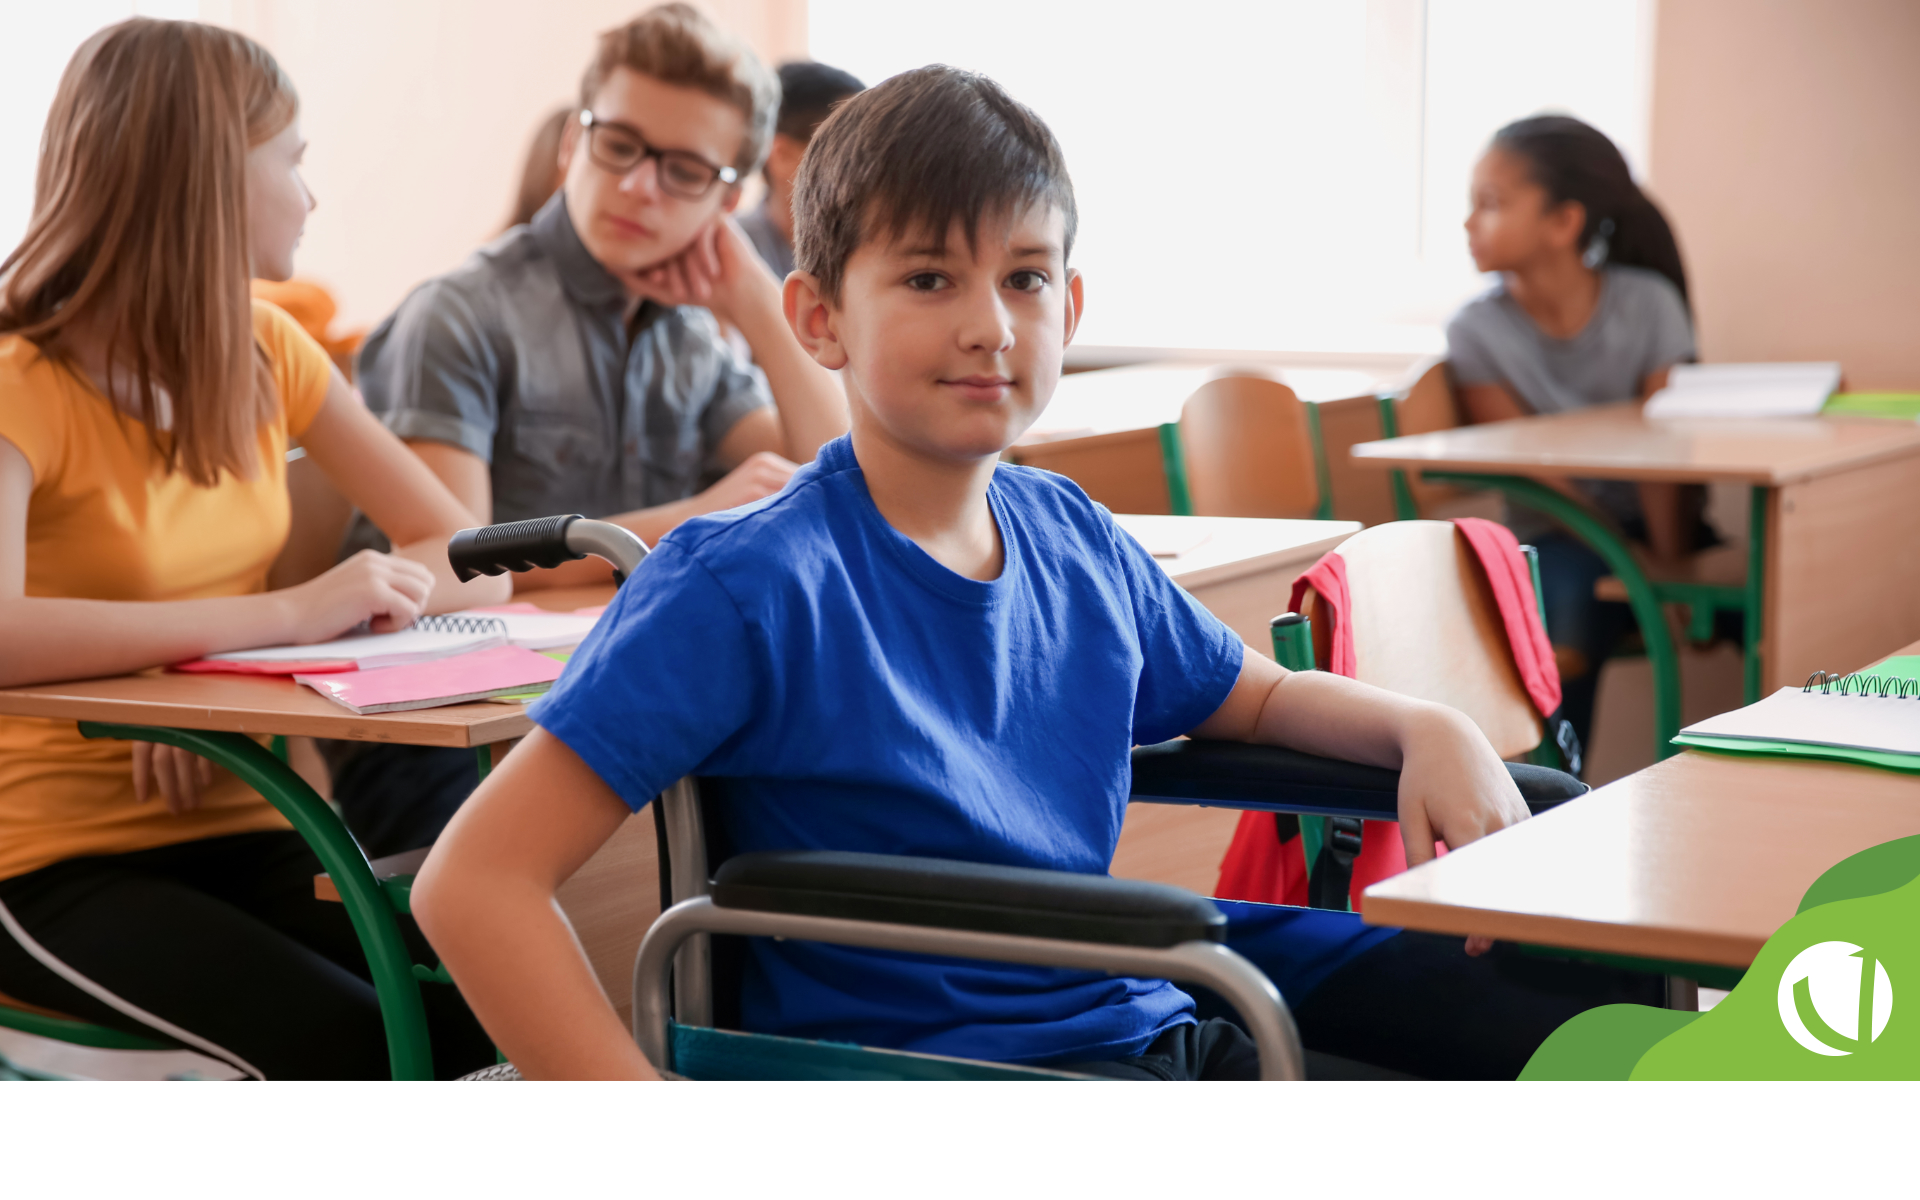 Saiba mais sobre a importância da acessibilidade na escola e como preparar sua instituição para receber pessoas com deficiência.